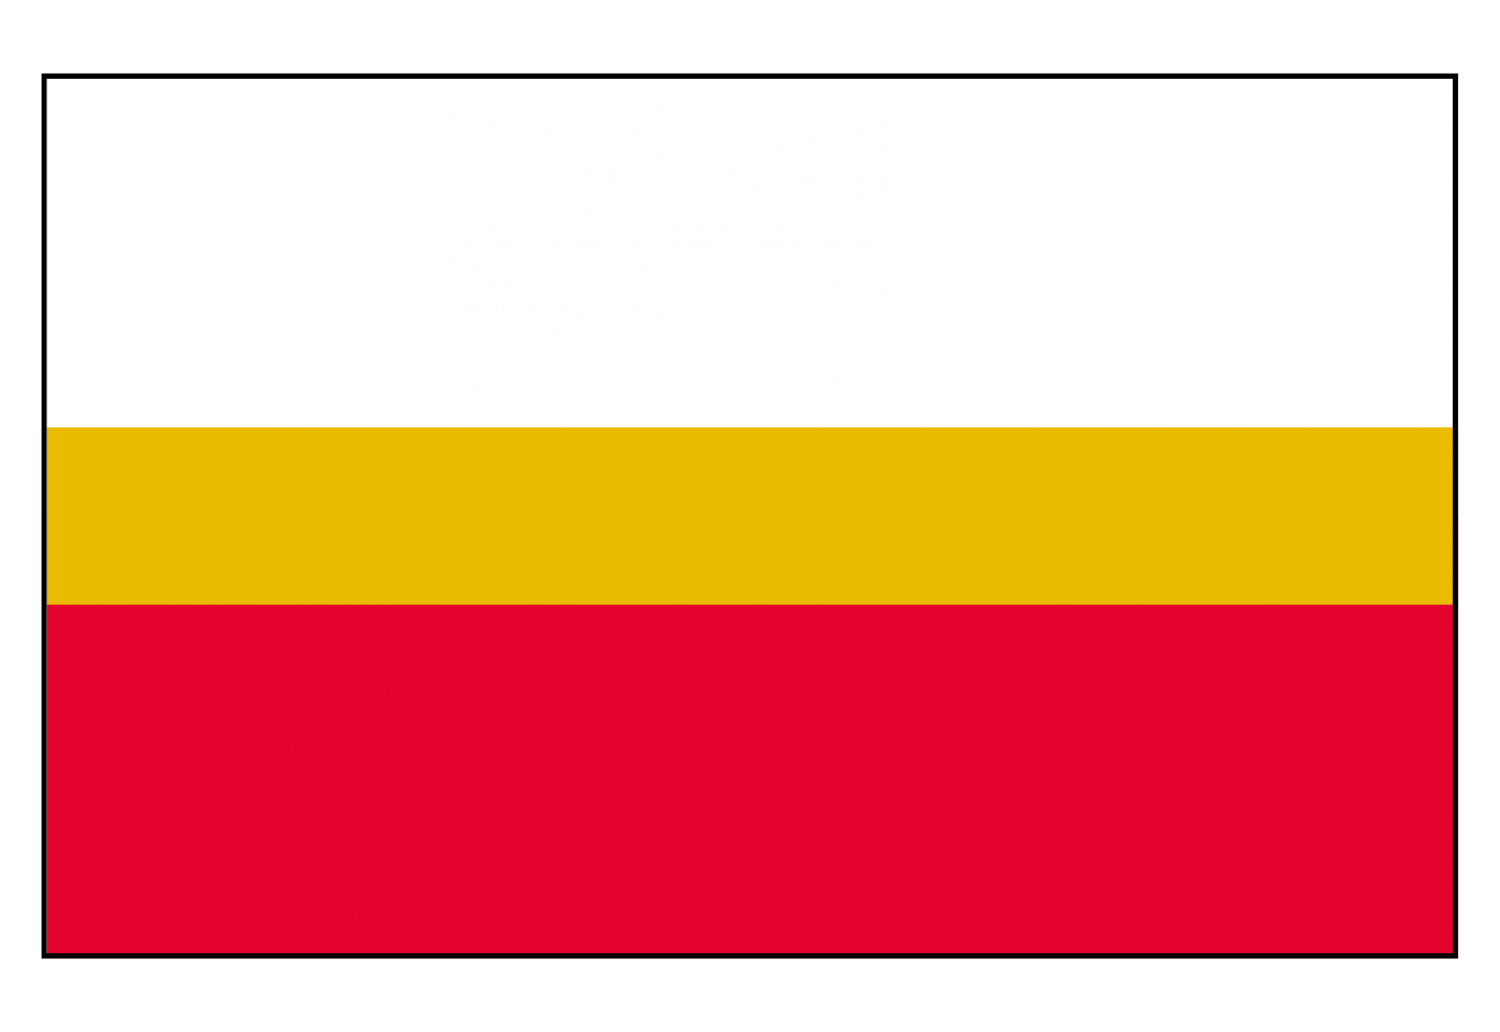 Flaga Województwa Małopolskiego trzy kolory bialy złoty i czerwony